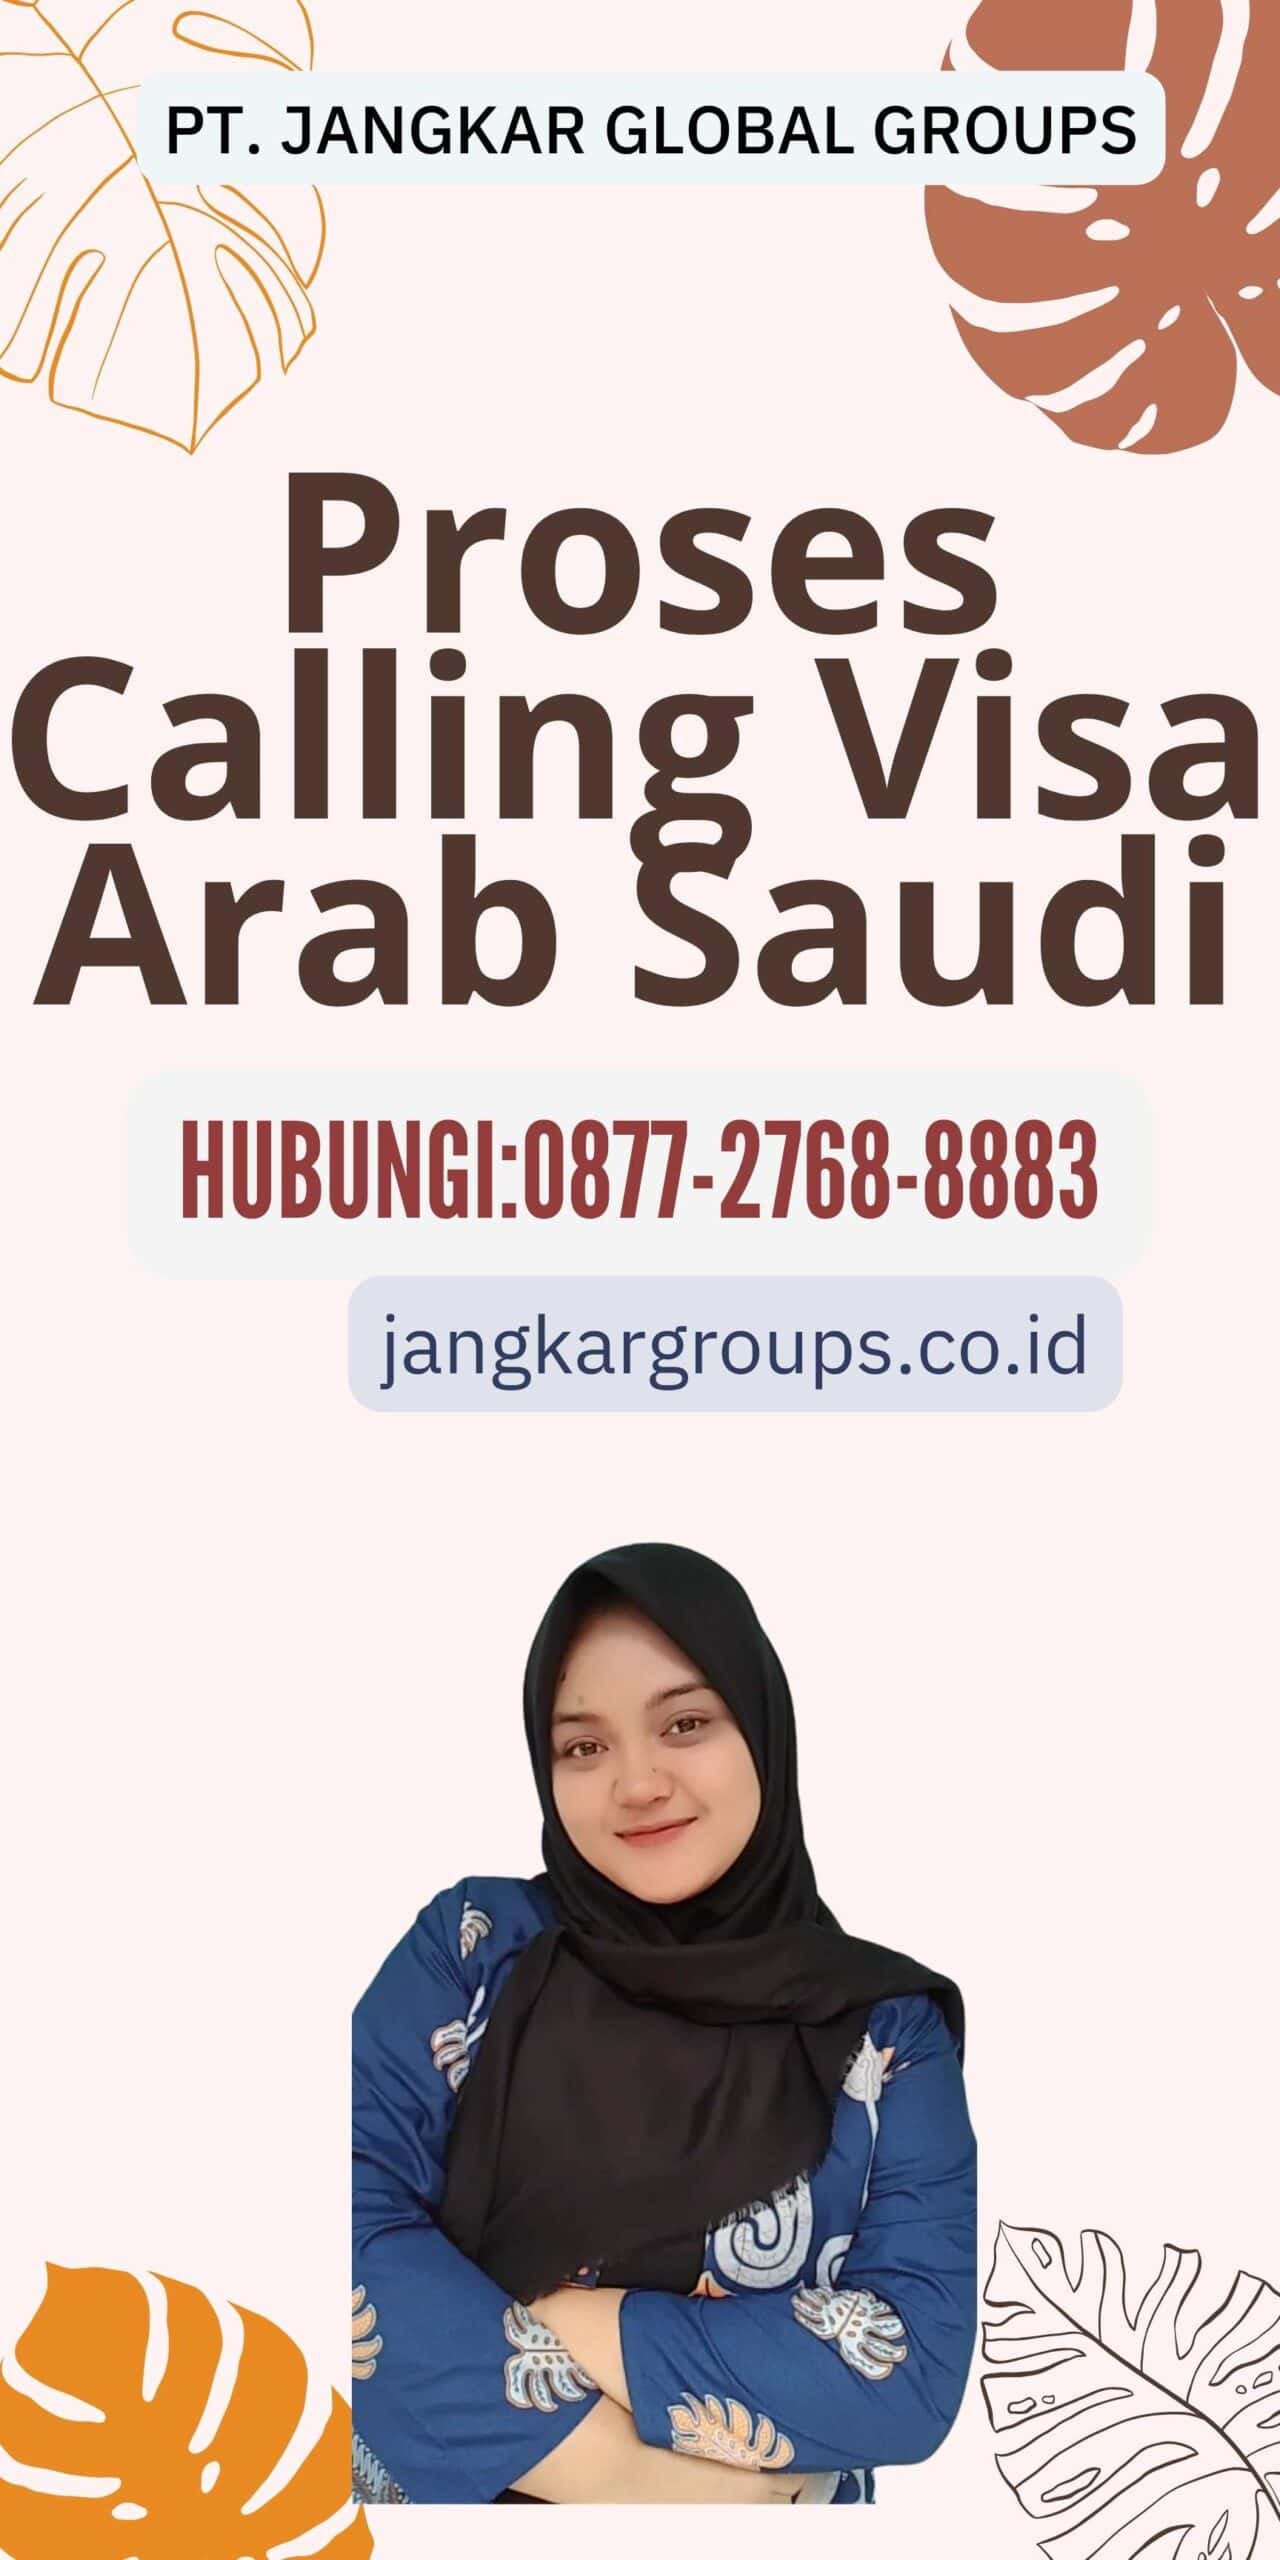 Proses Calling Visa Arab Saudi